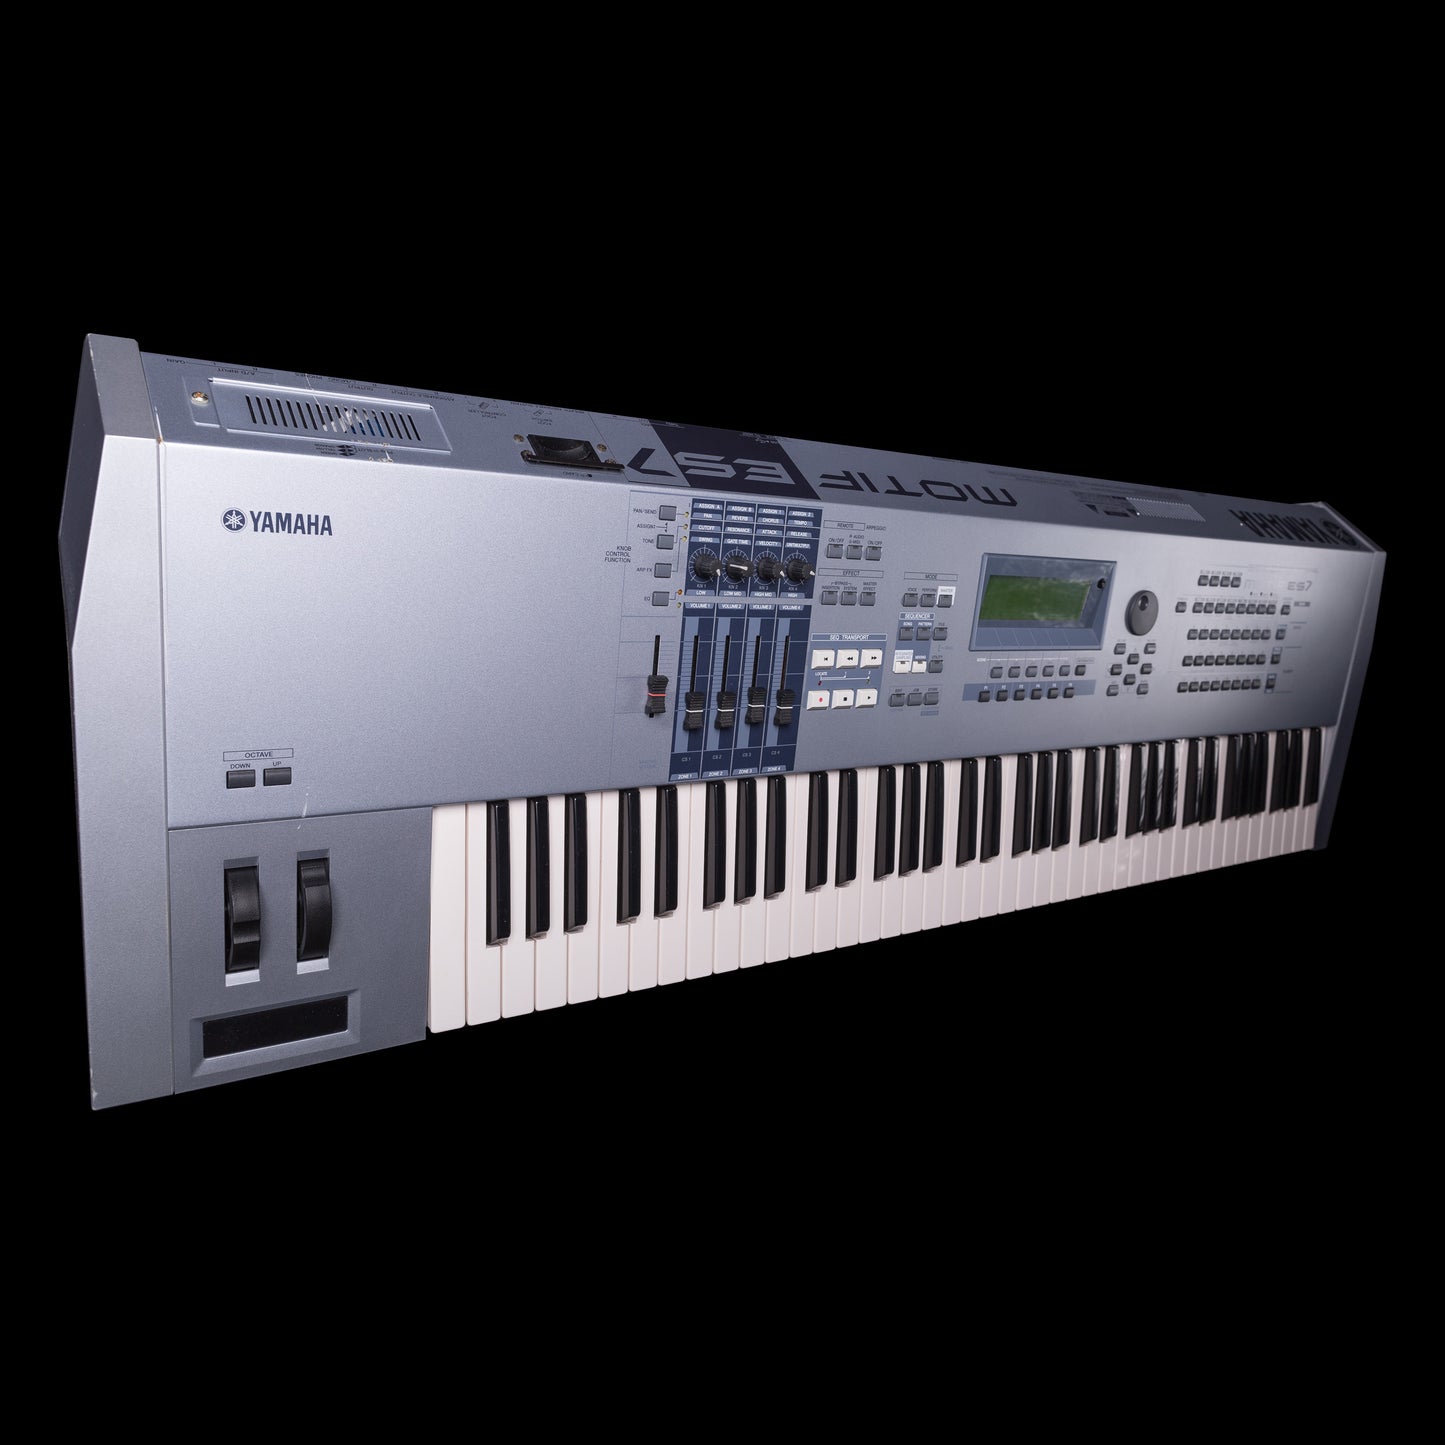 Yamaha Motif ES7 Keyboard 76-Key Music Production Synthesizer MOTIFES7